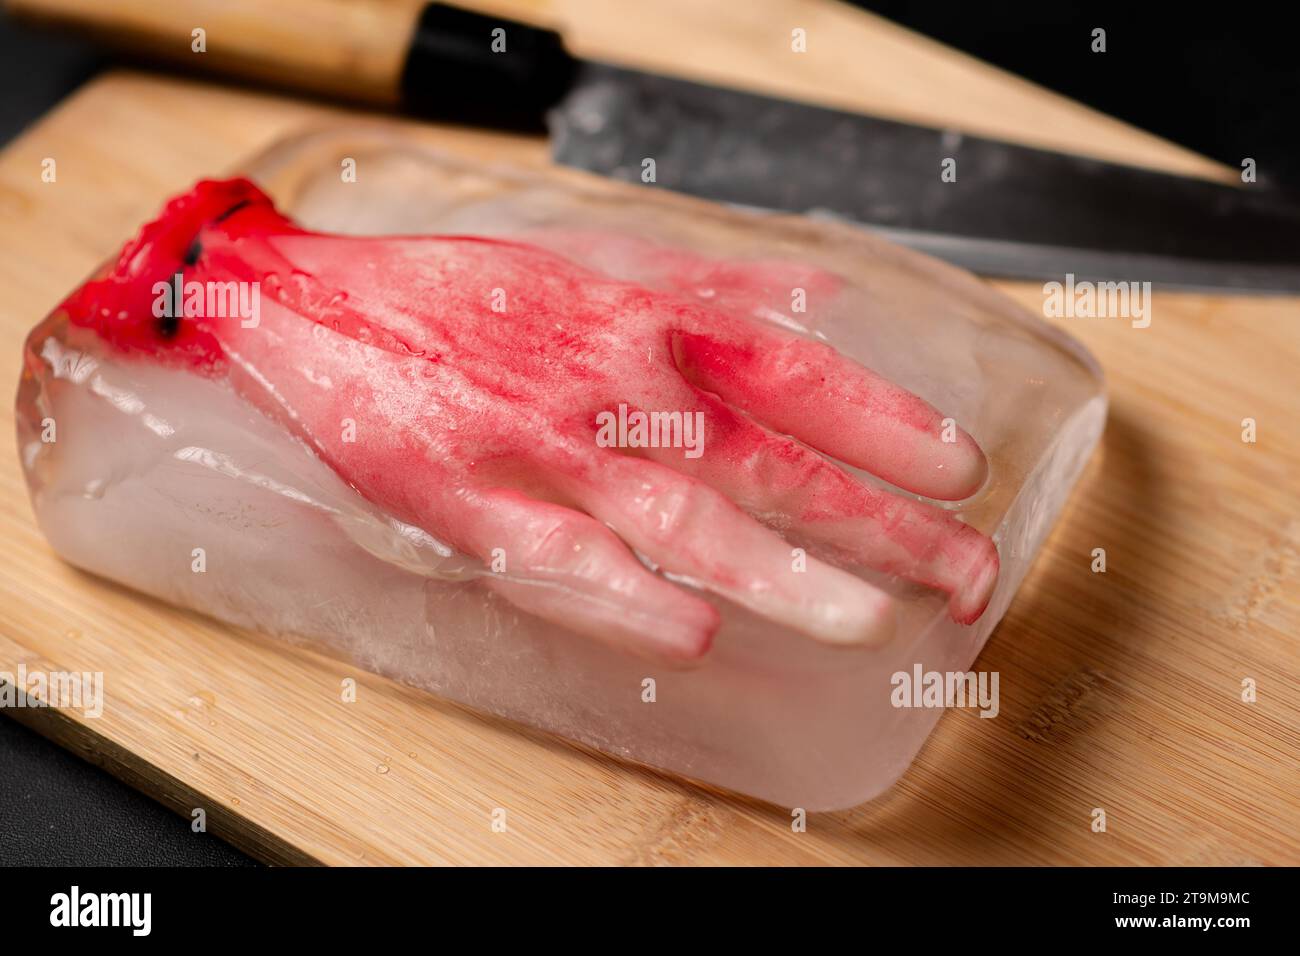 Ice Terror: Ein Horror-Konzept, bei dem ein menschliches Modell in einem Stück Eis auf einem hölzernen Schneidebrett eingefroren ist, was ein knochenkühlendes und beunruhigendes C erzeugt Stockfoto